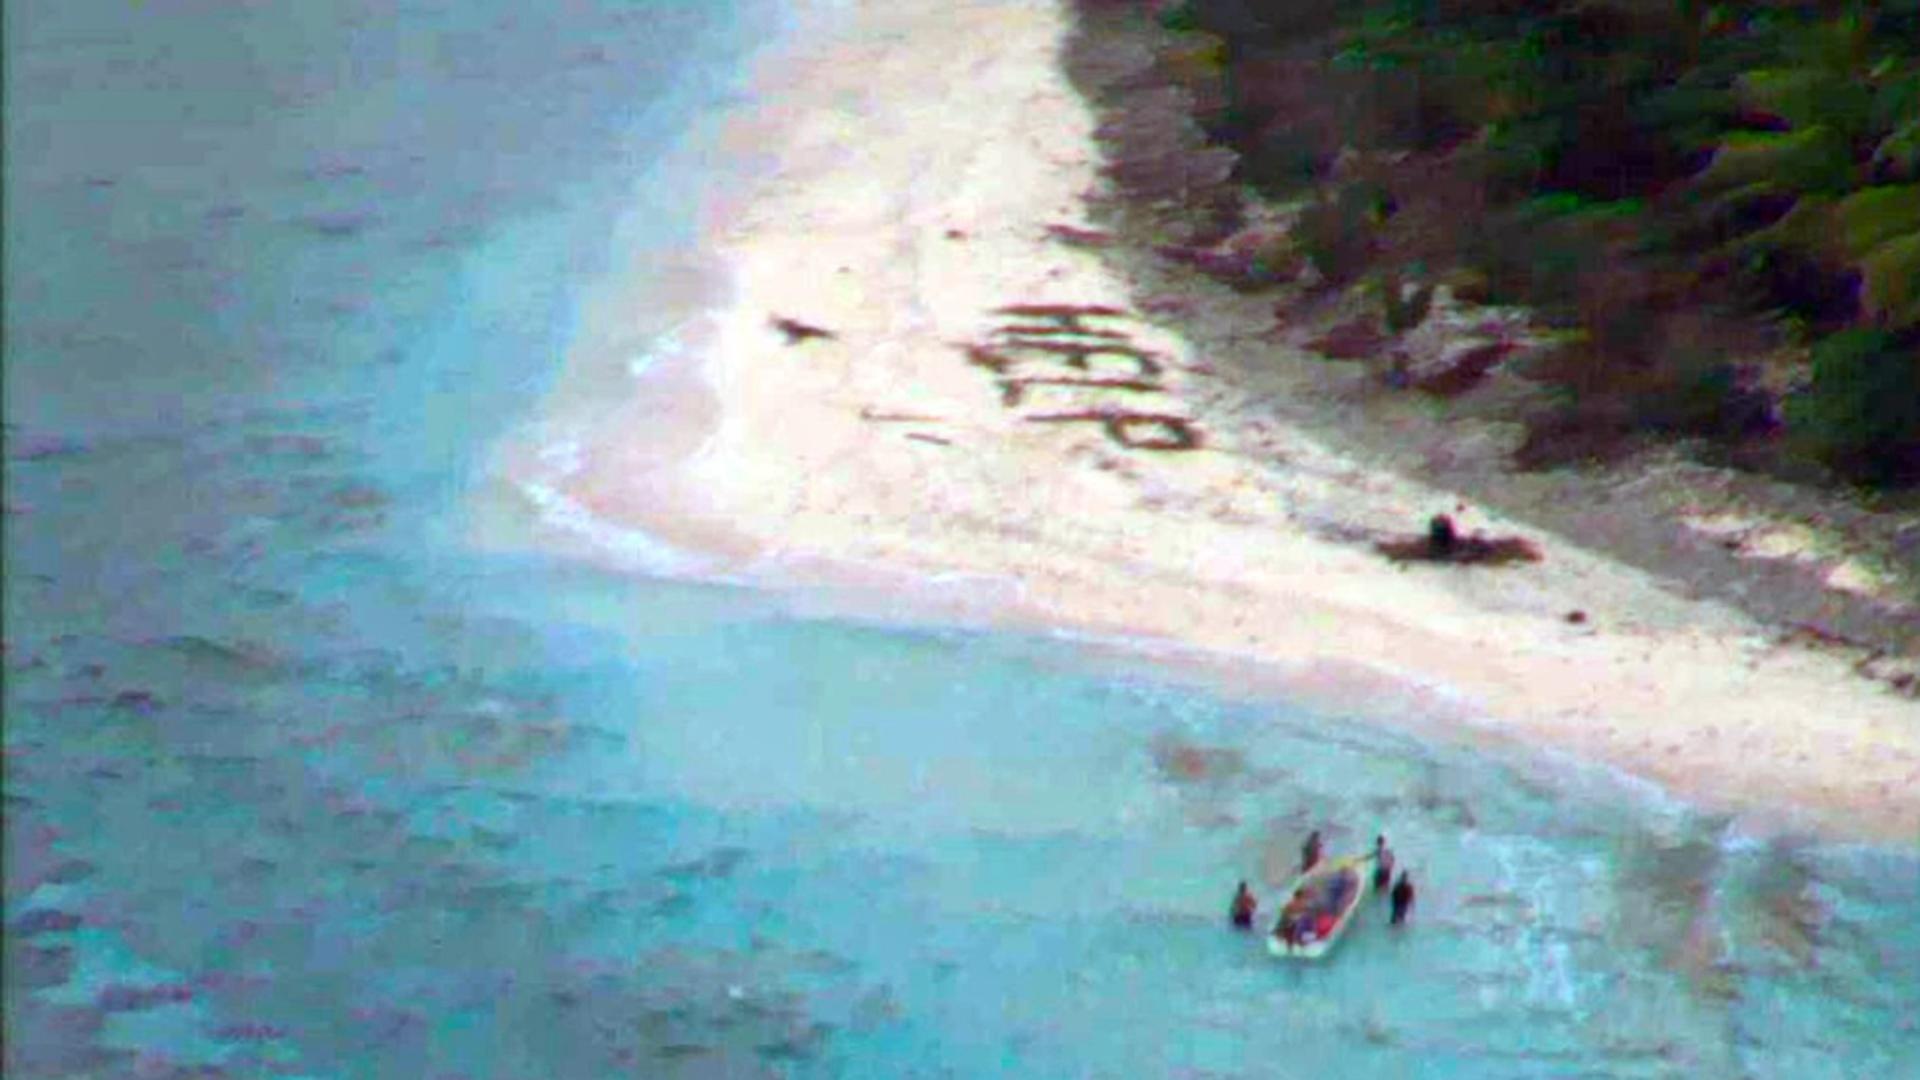 Trei naufragiați de pe o insulă pustie au fost salvați după ce au scris „Ajutor” cu frunze de palmier pe plajă VIDEO